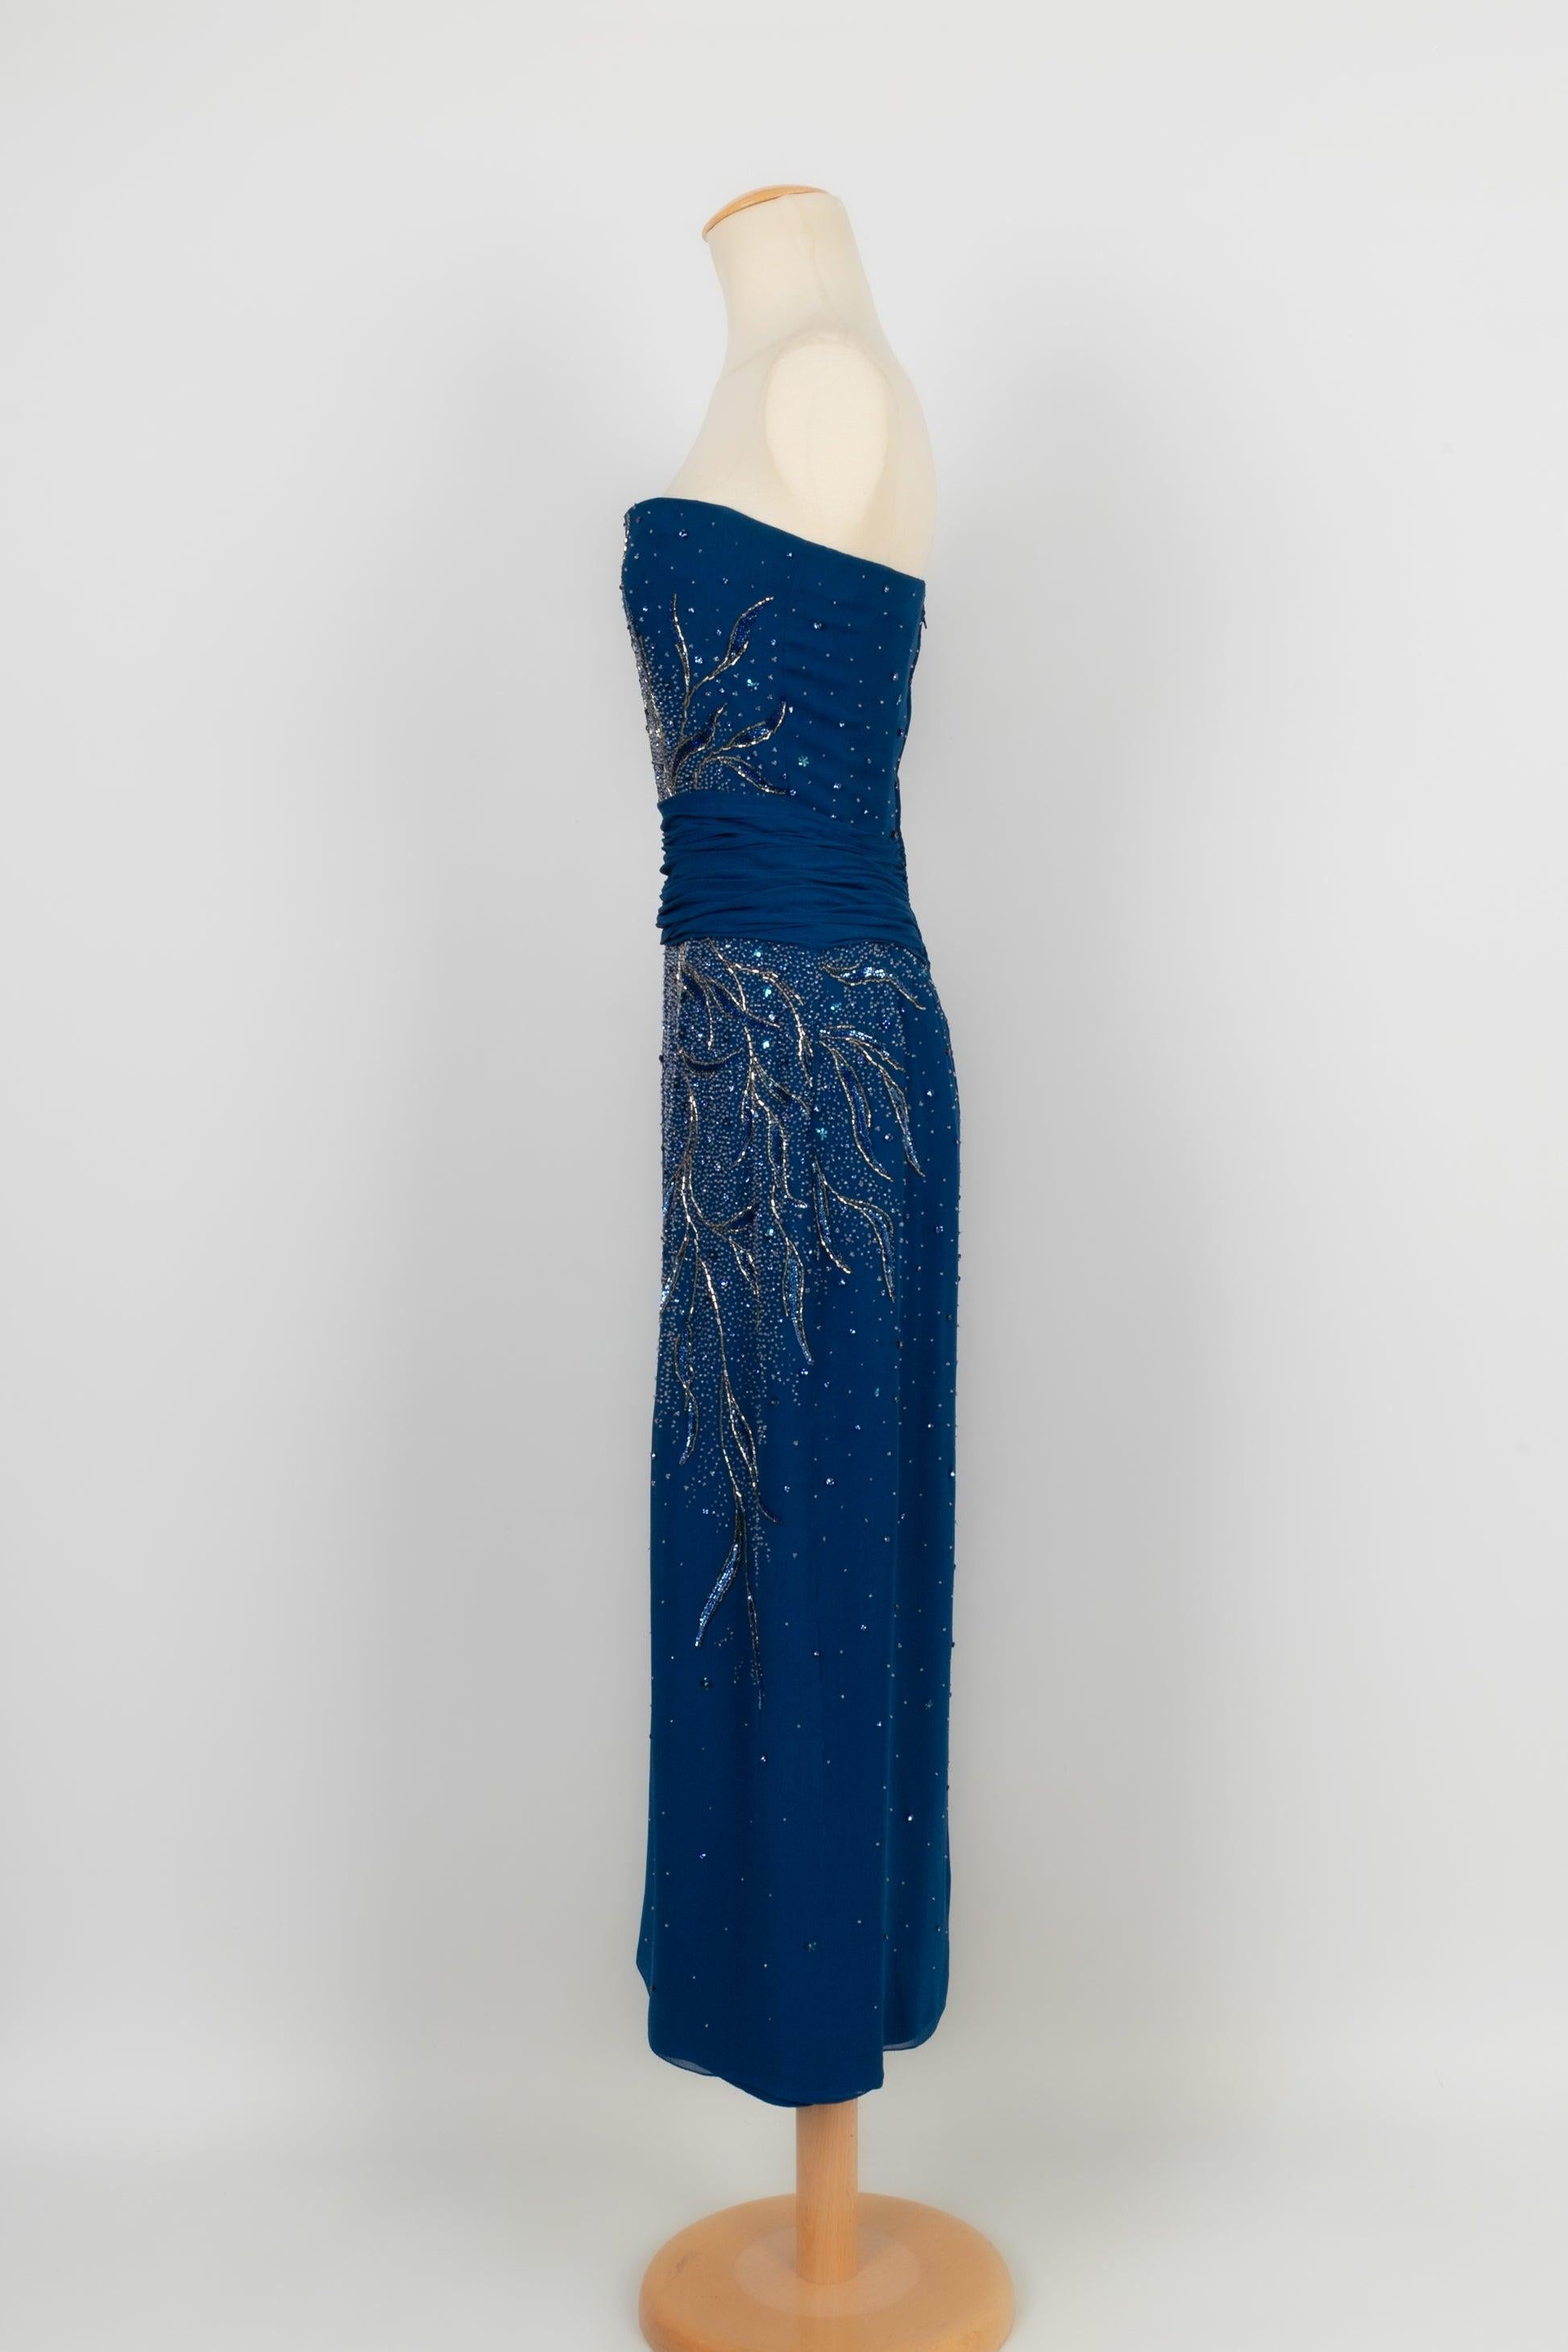 Jean-Louis Scherrer - (Made in France) Blaues trägerloses Haute Couture Kleid aus Krepp, bestickt mit Perlen und Pailletten in Blau- und Goldtönen. Keine Größe noch Zusammensetzung Label, es passt ein 36FR. Zu beachten, Achselflecken.

Zusätzliche